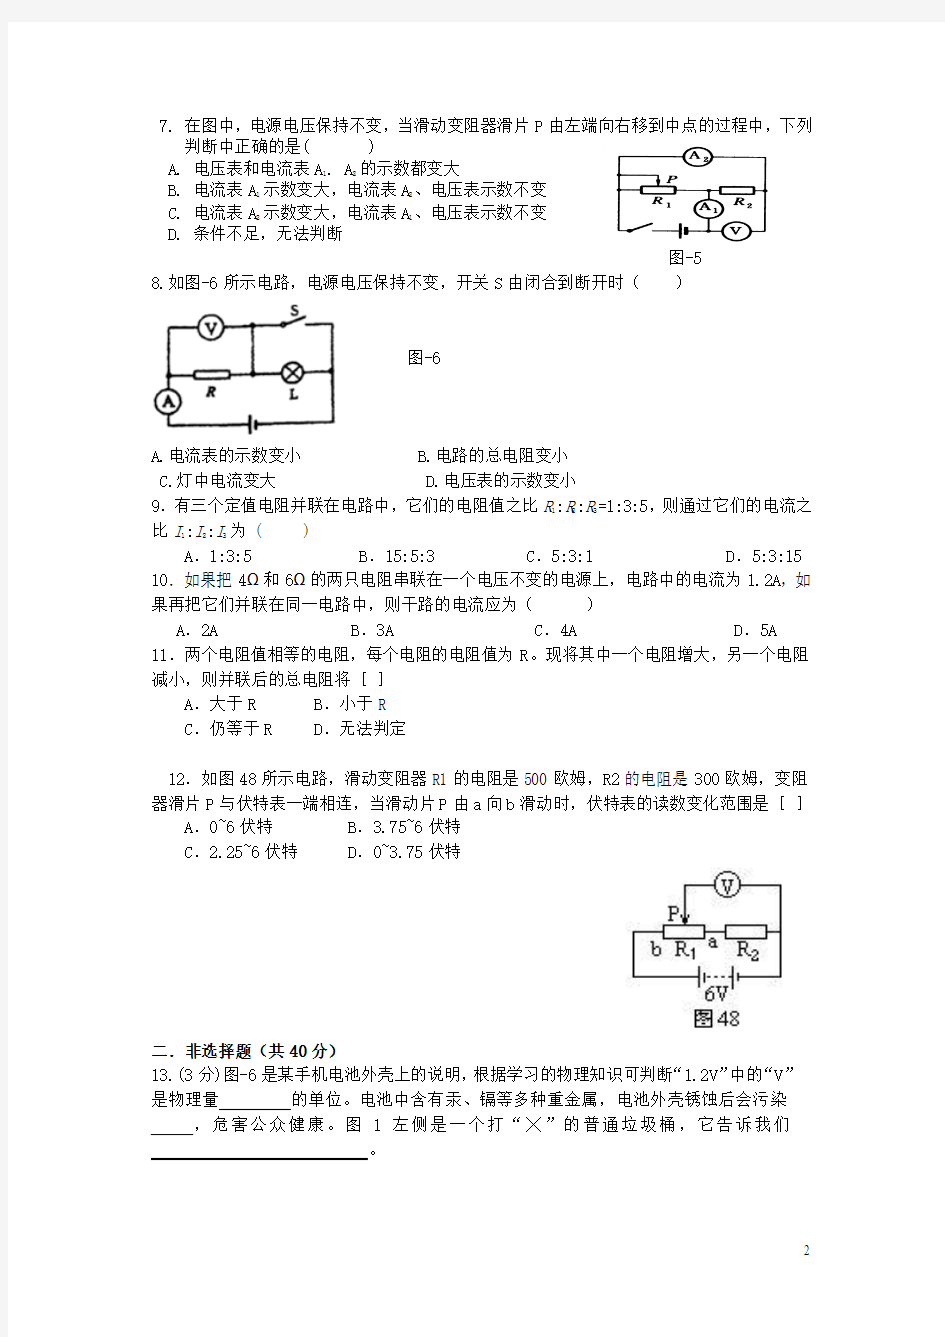 2013.3武汉市第11初级中学物理周练测试题(胡海峰)